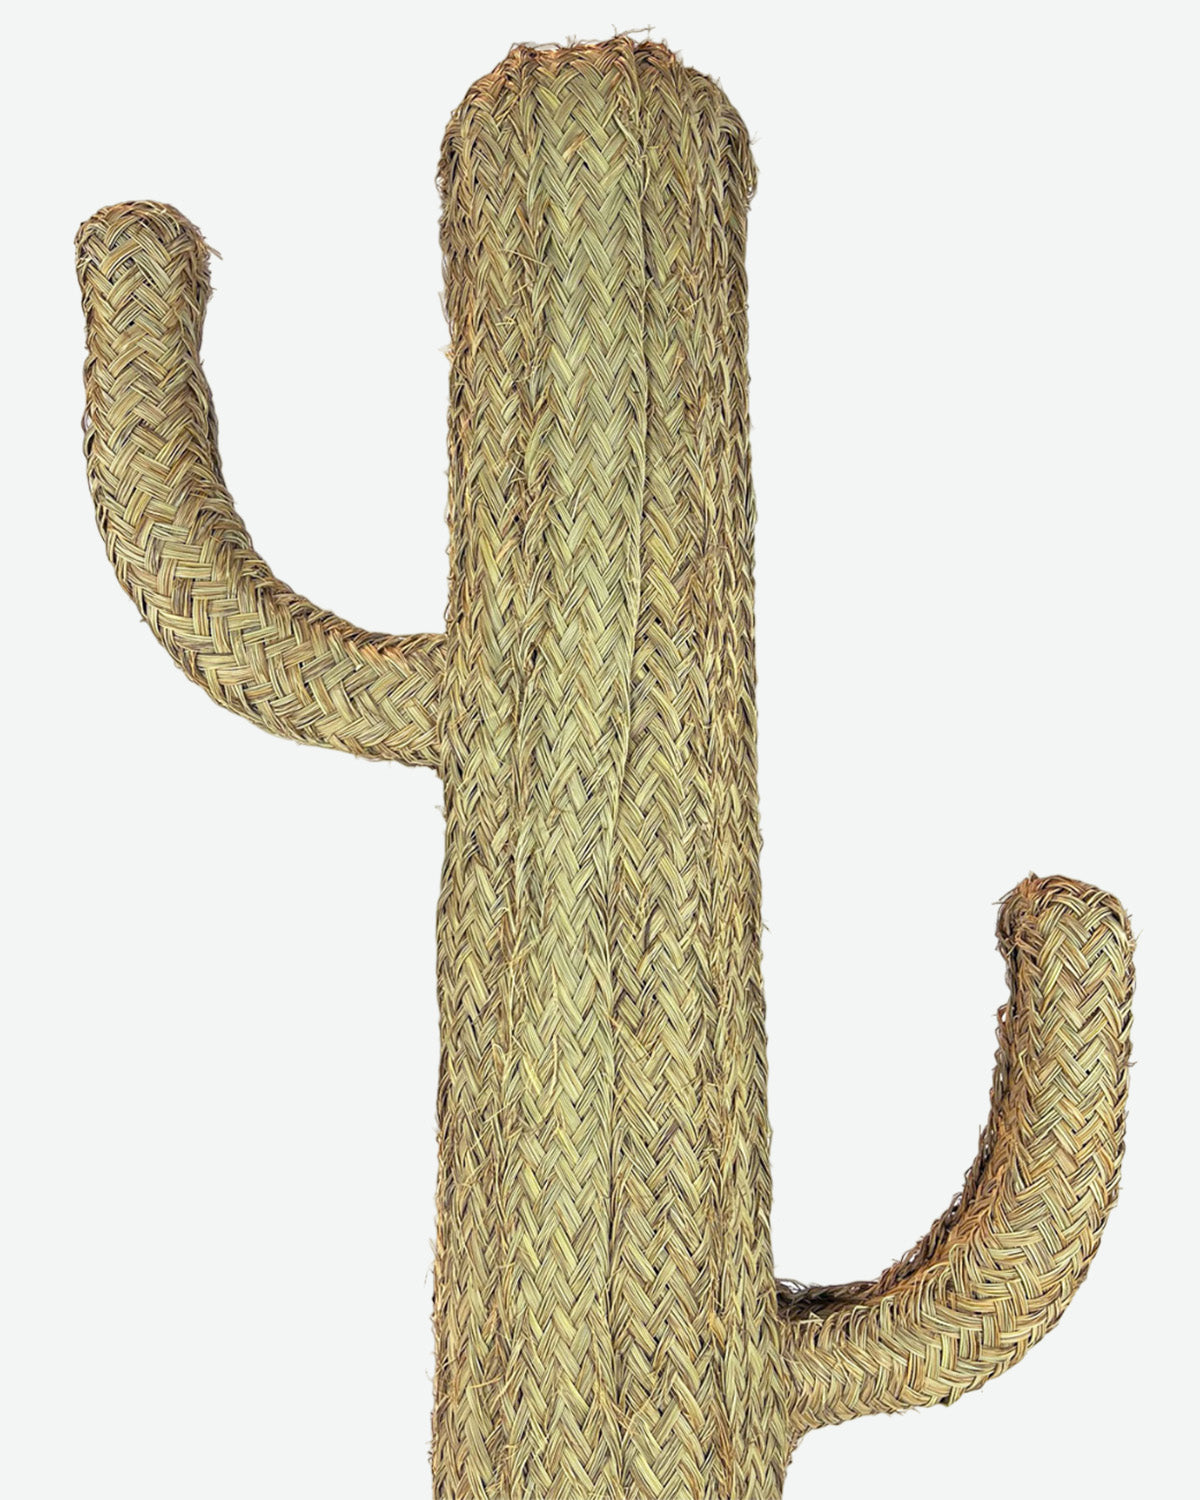 Cactus Teide